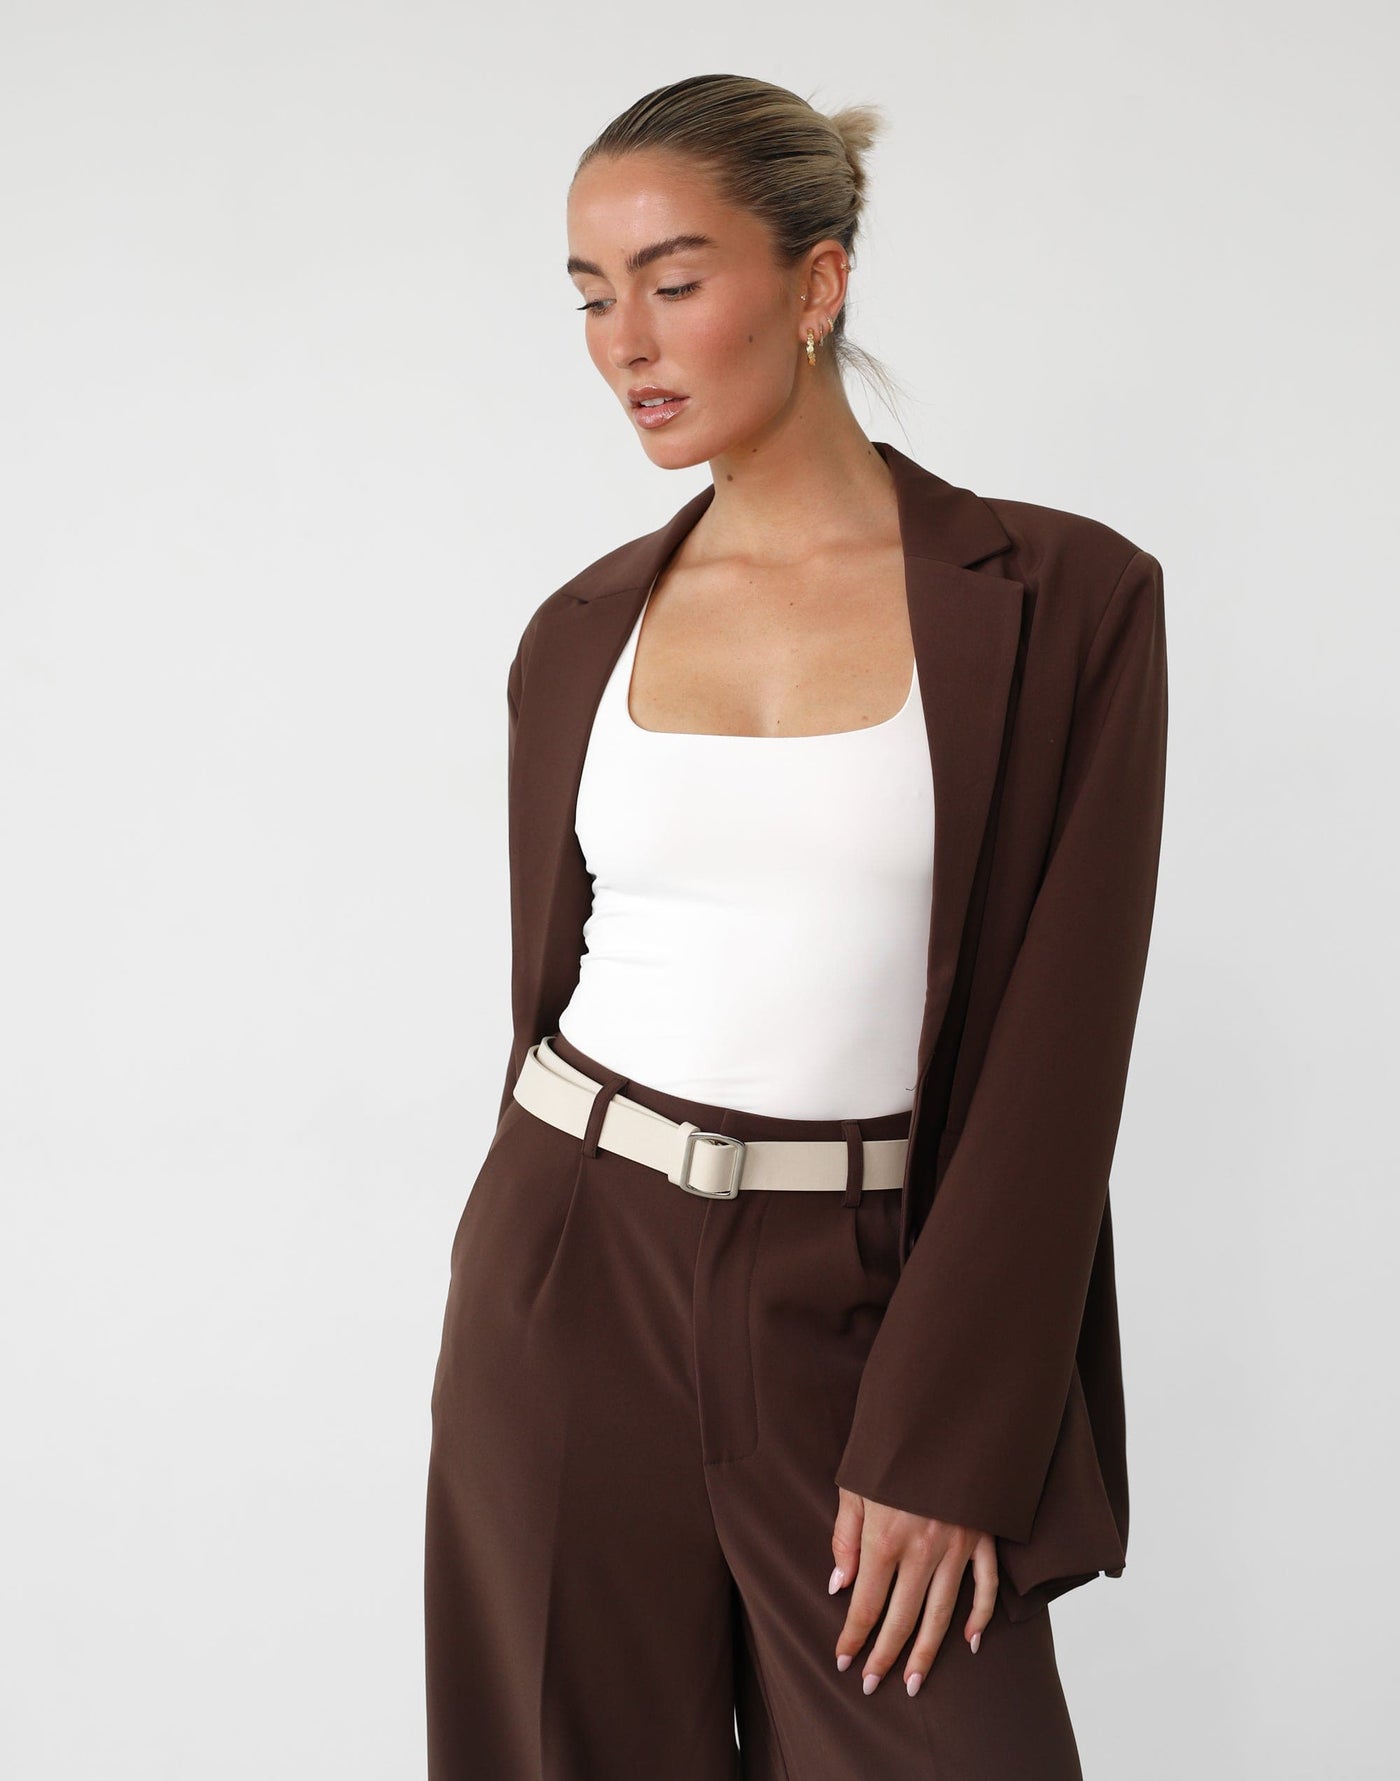 Darla Belt (Beige) - Beige Faux Leather Belt - Women's Accessories - Charcoal Clothing